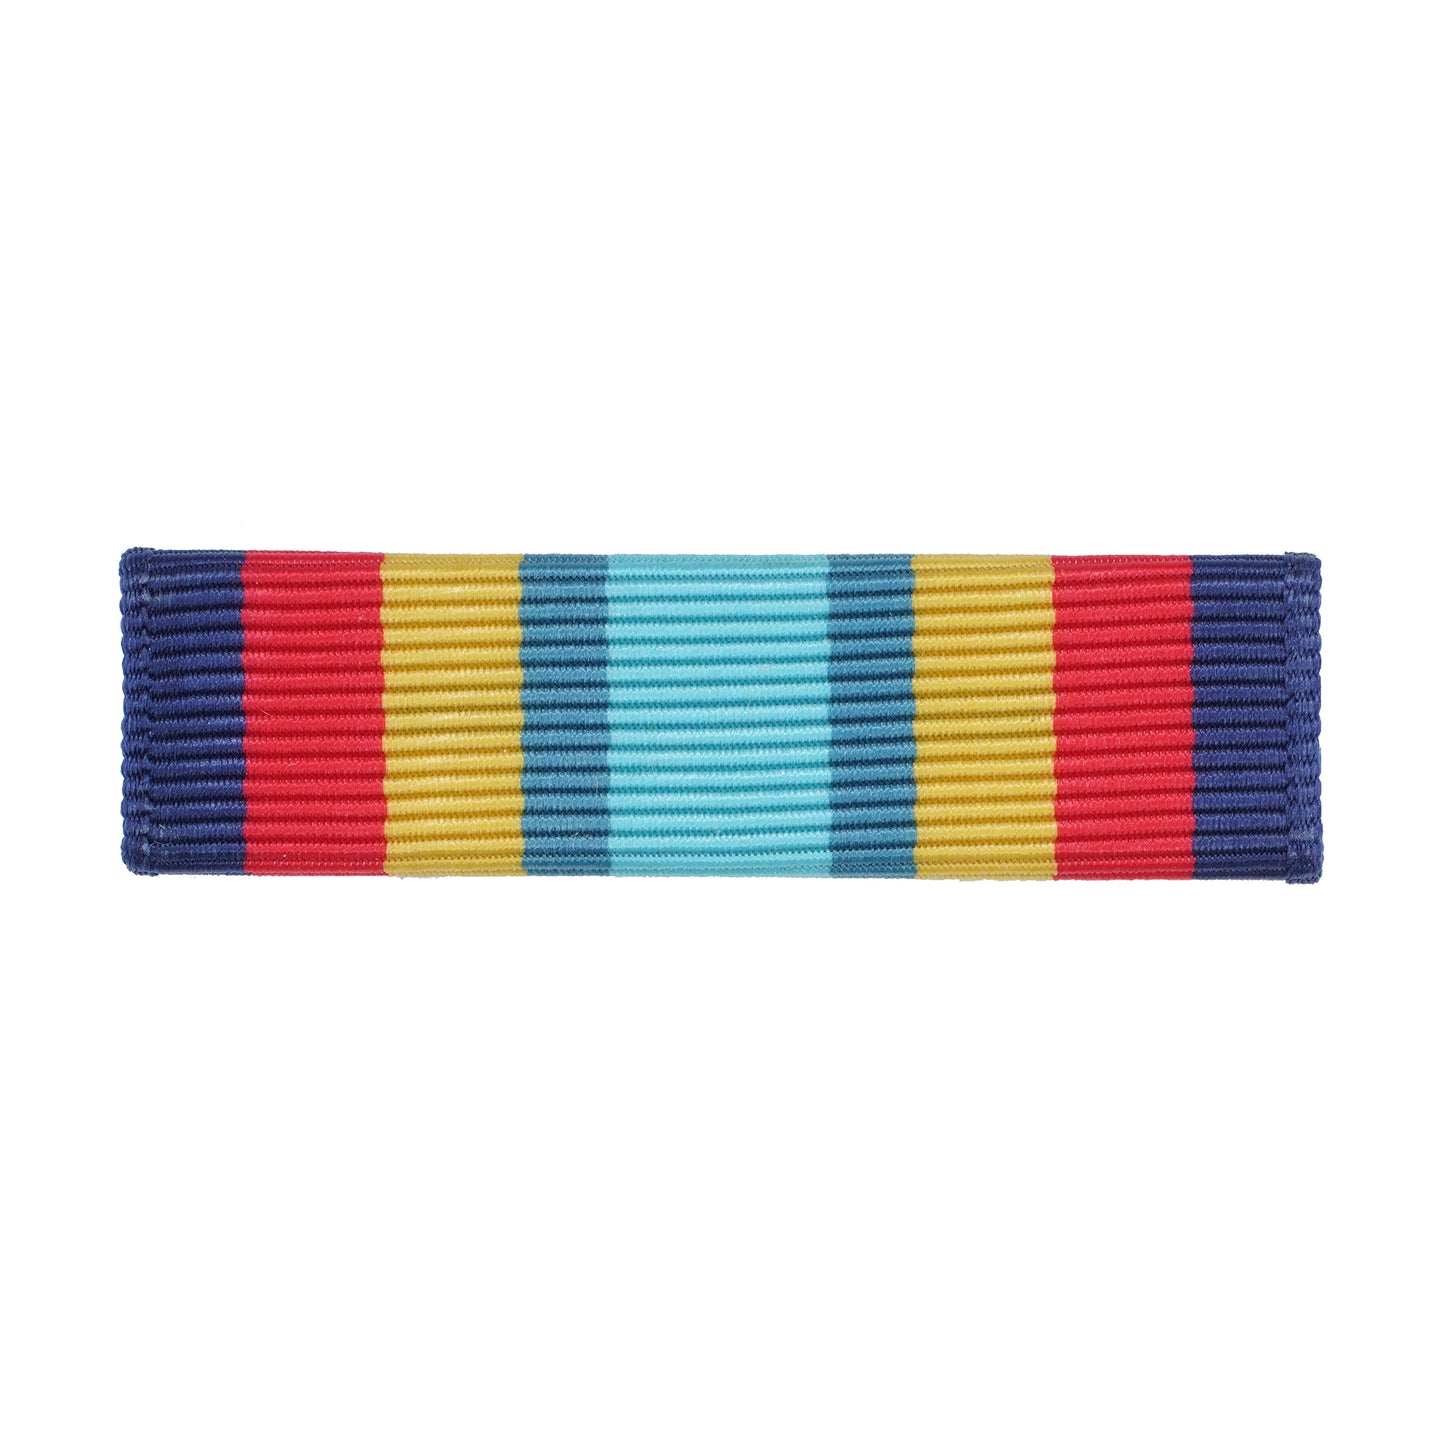 U.S. Navy Sea Service Ribbon